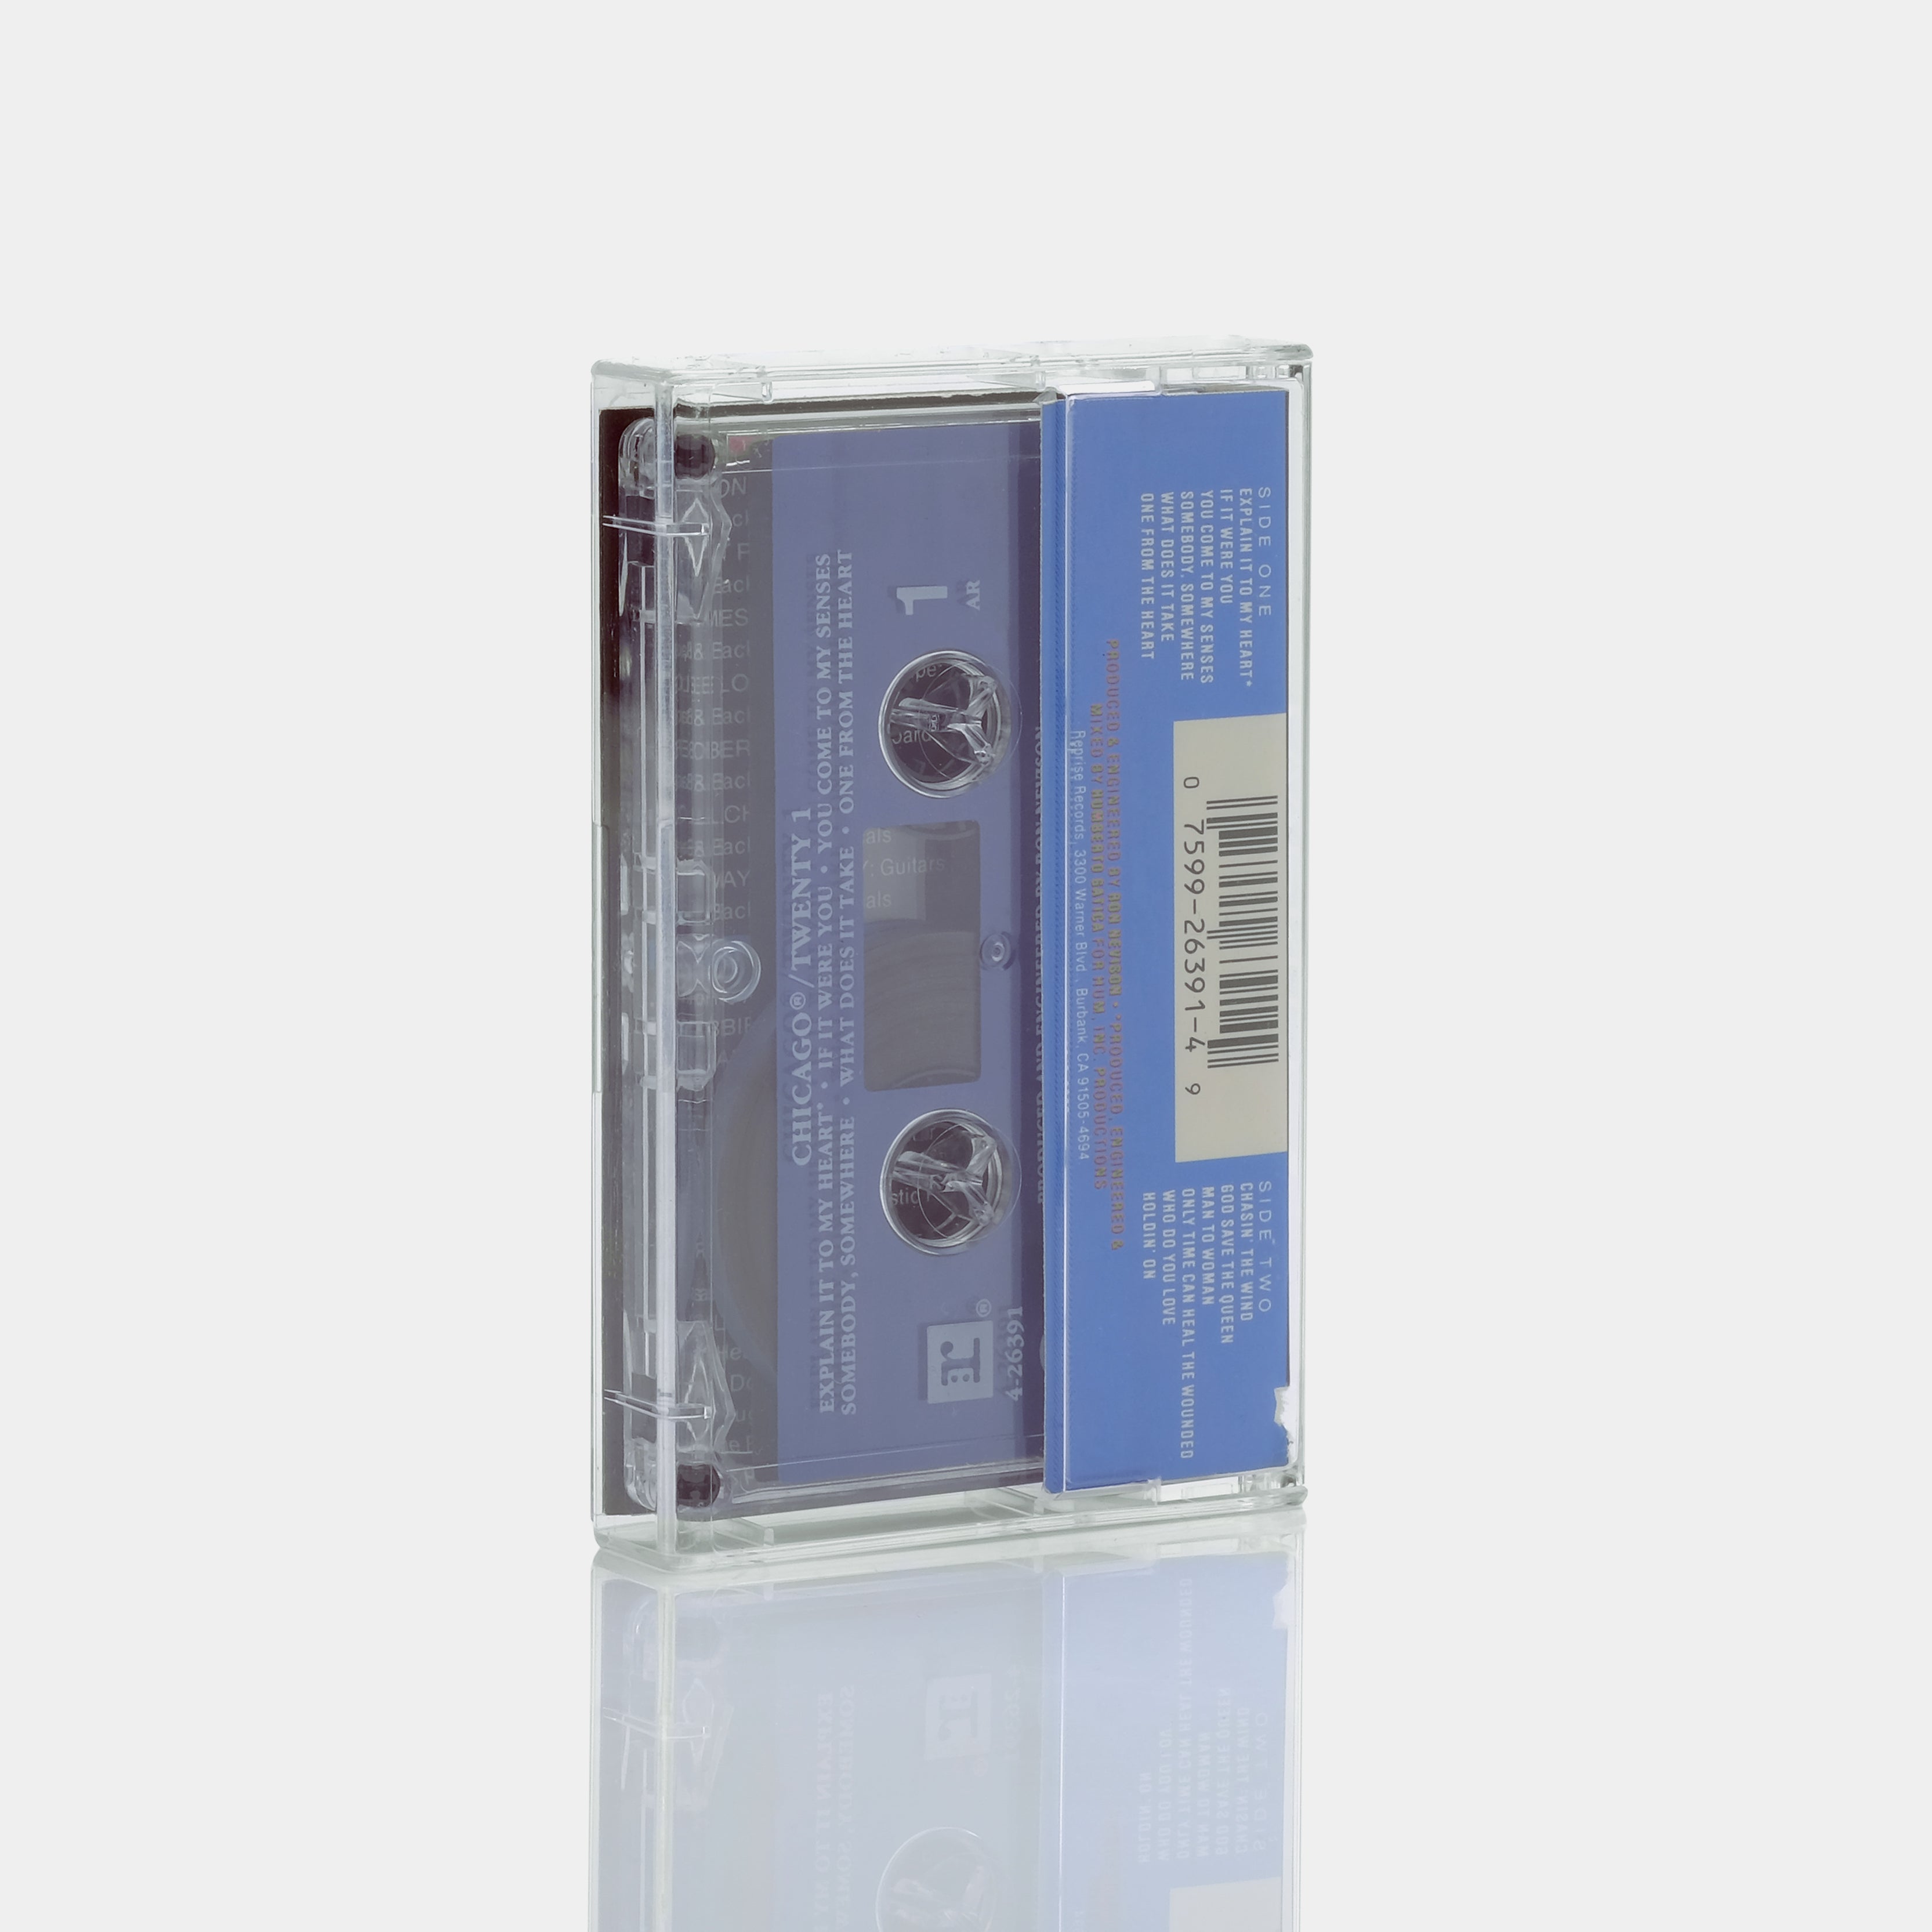 Chicago - Twenty 1 Cassette Tape